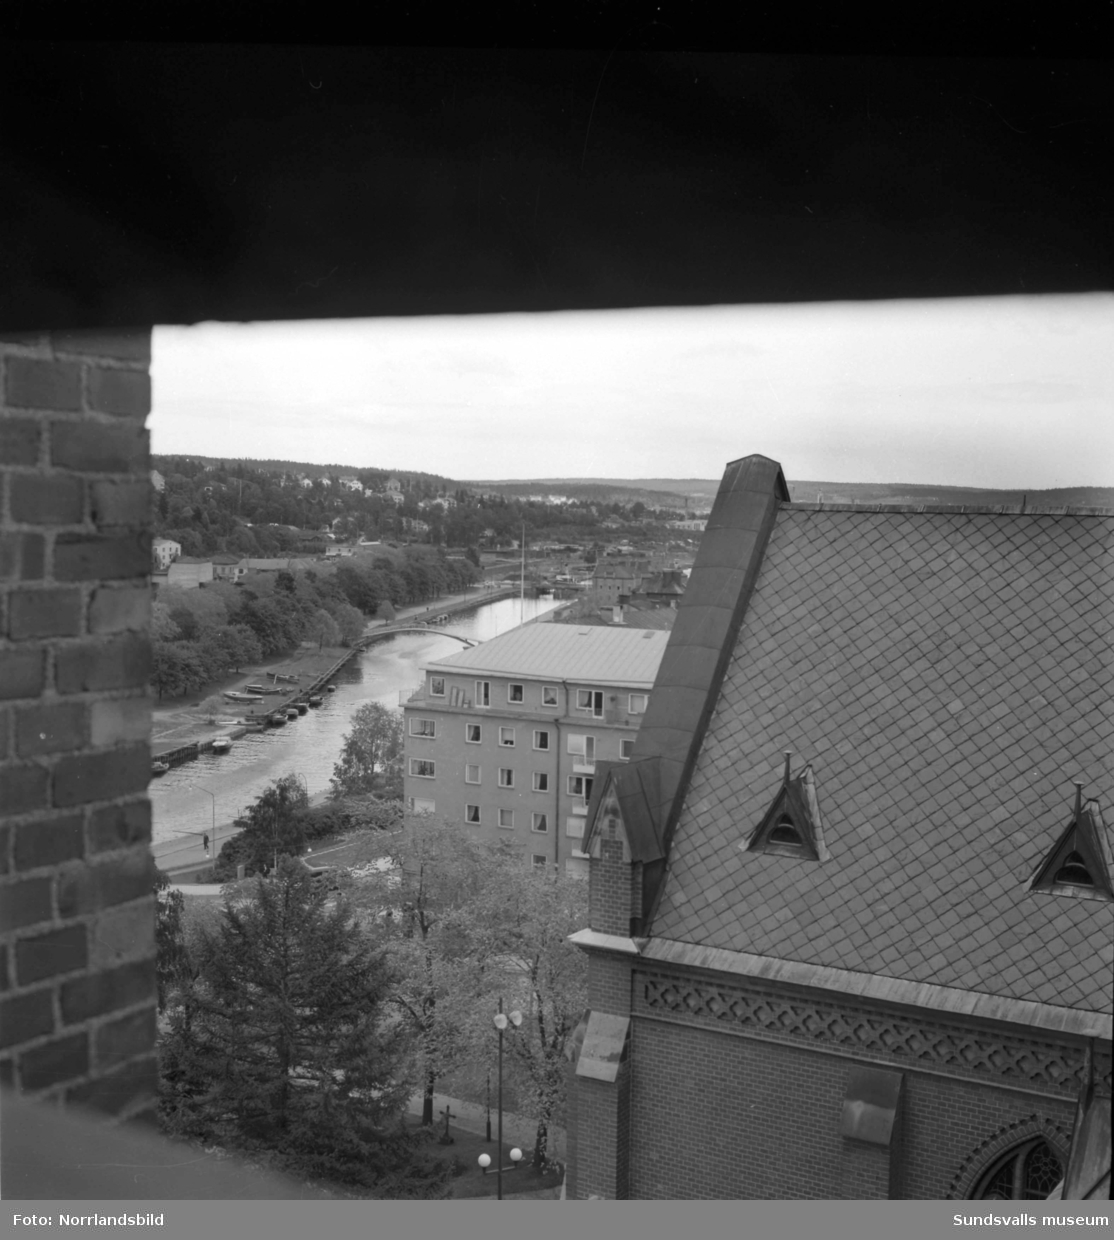 Stadsvy tagen från kyrkans tak mot öster utmed Selångersån.